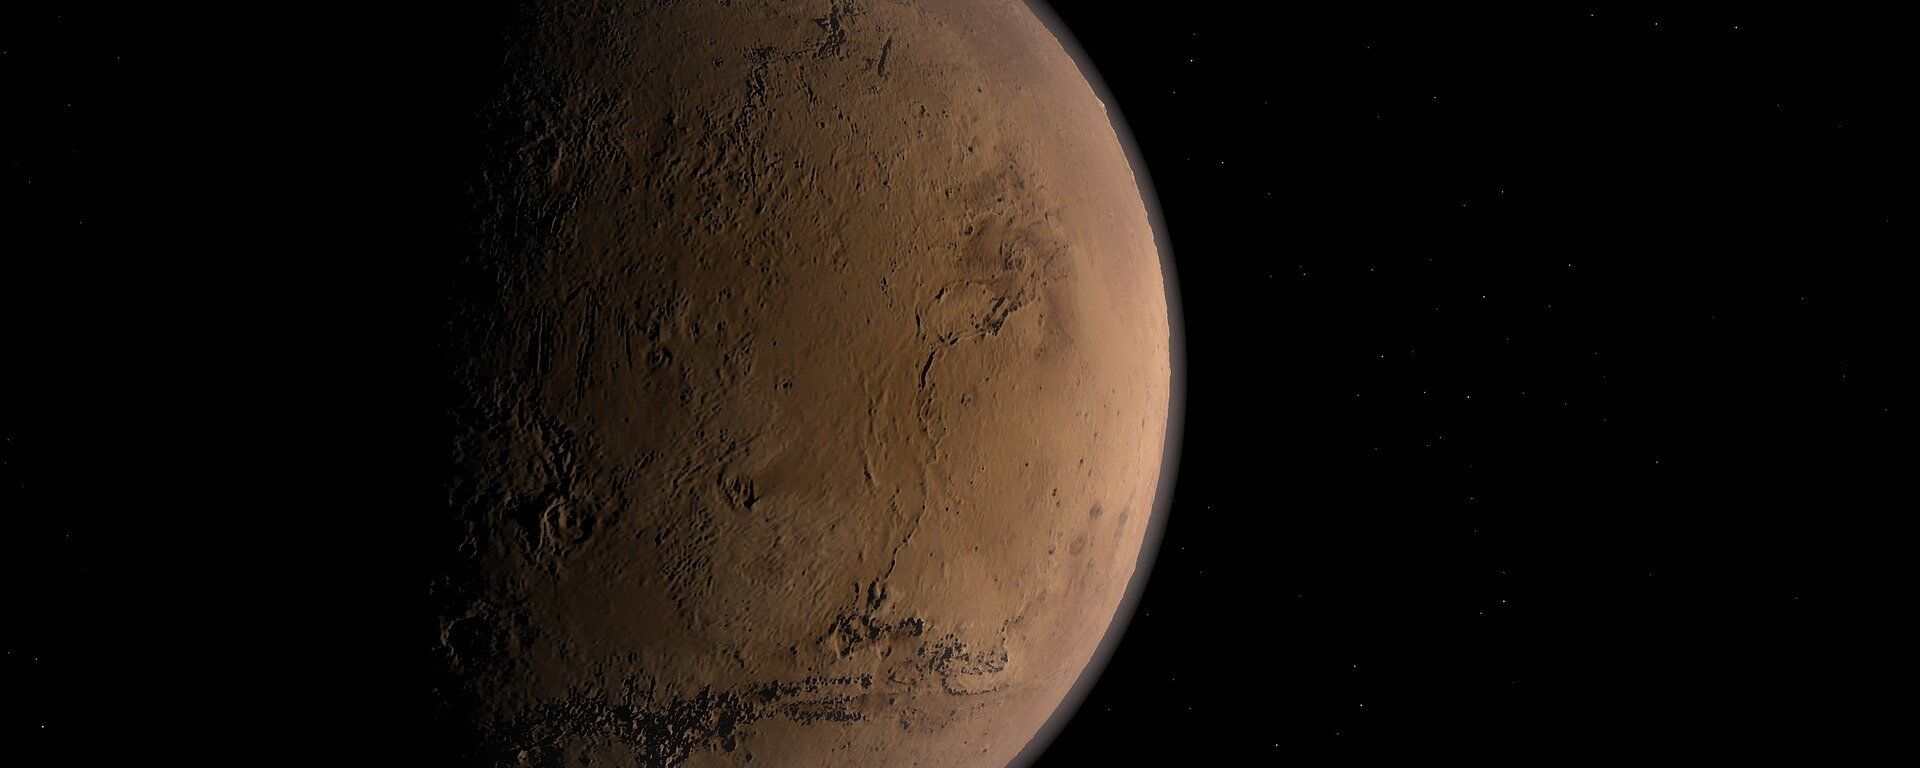 Marte (imagen referencial) - Sputnik Mundo, 1920, 07.04.2021